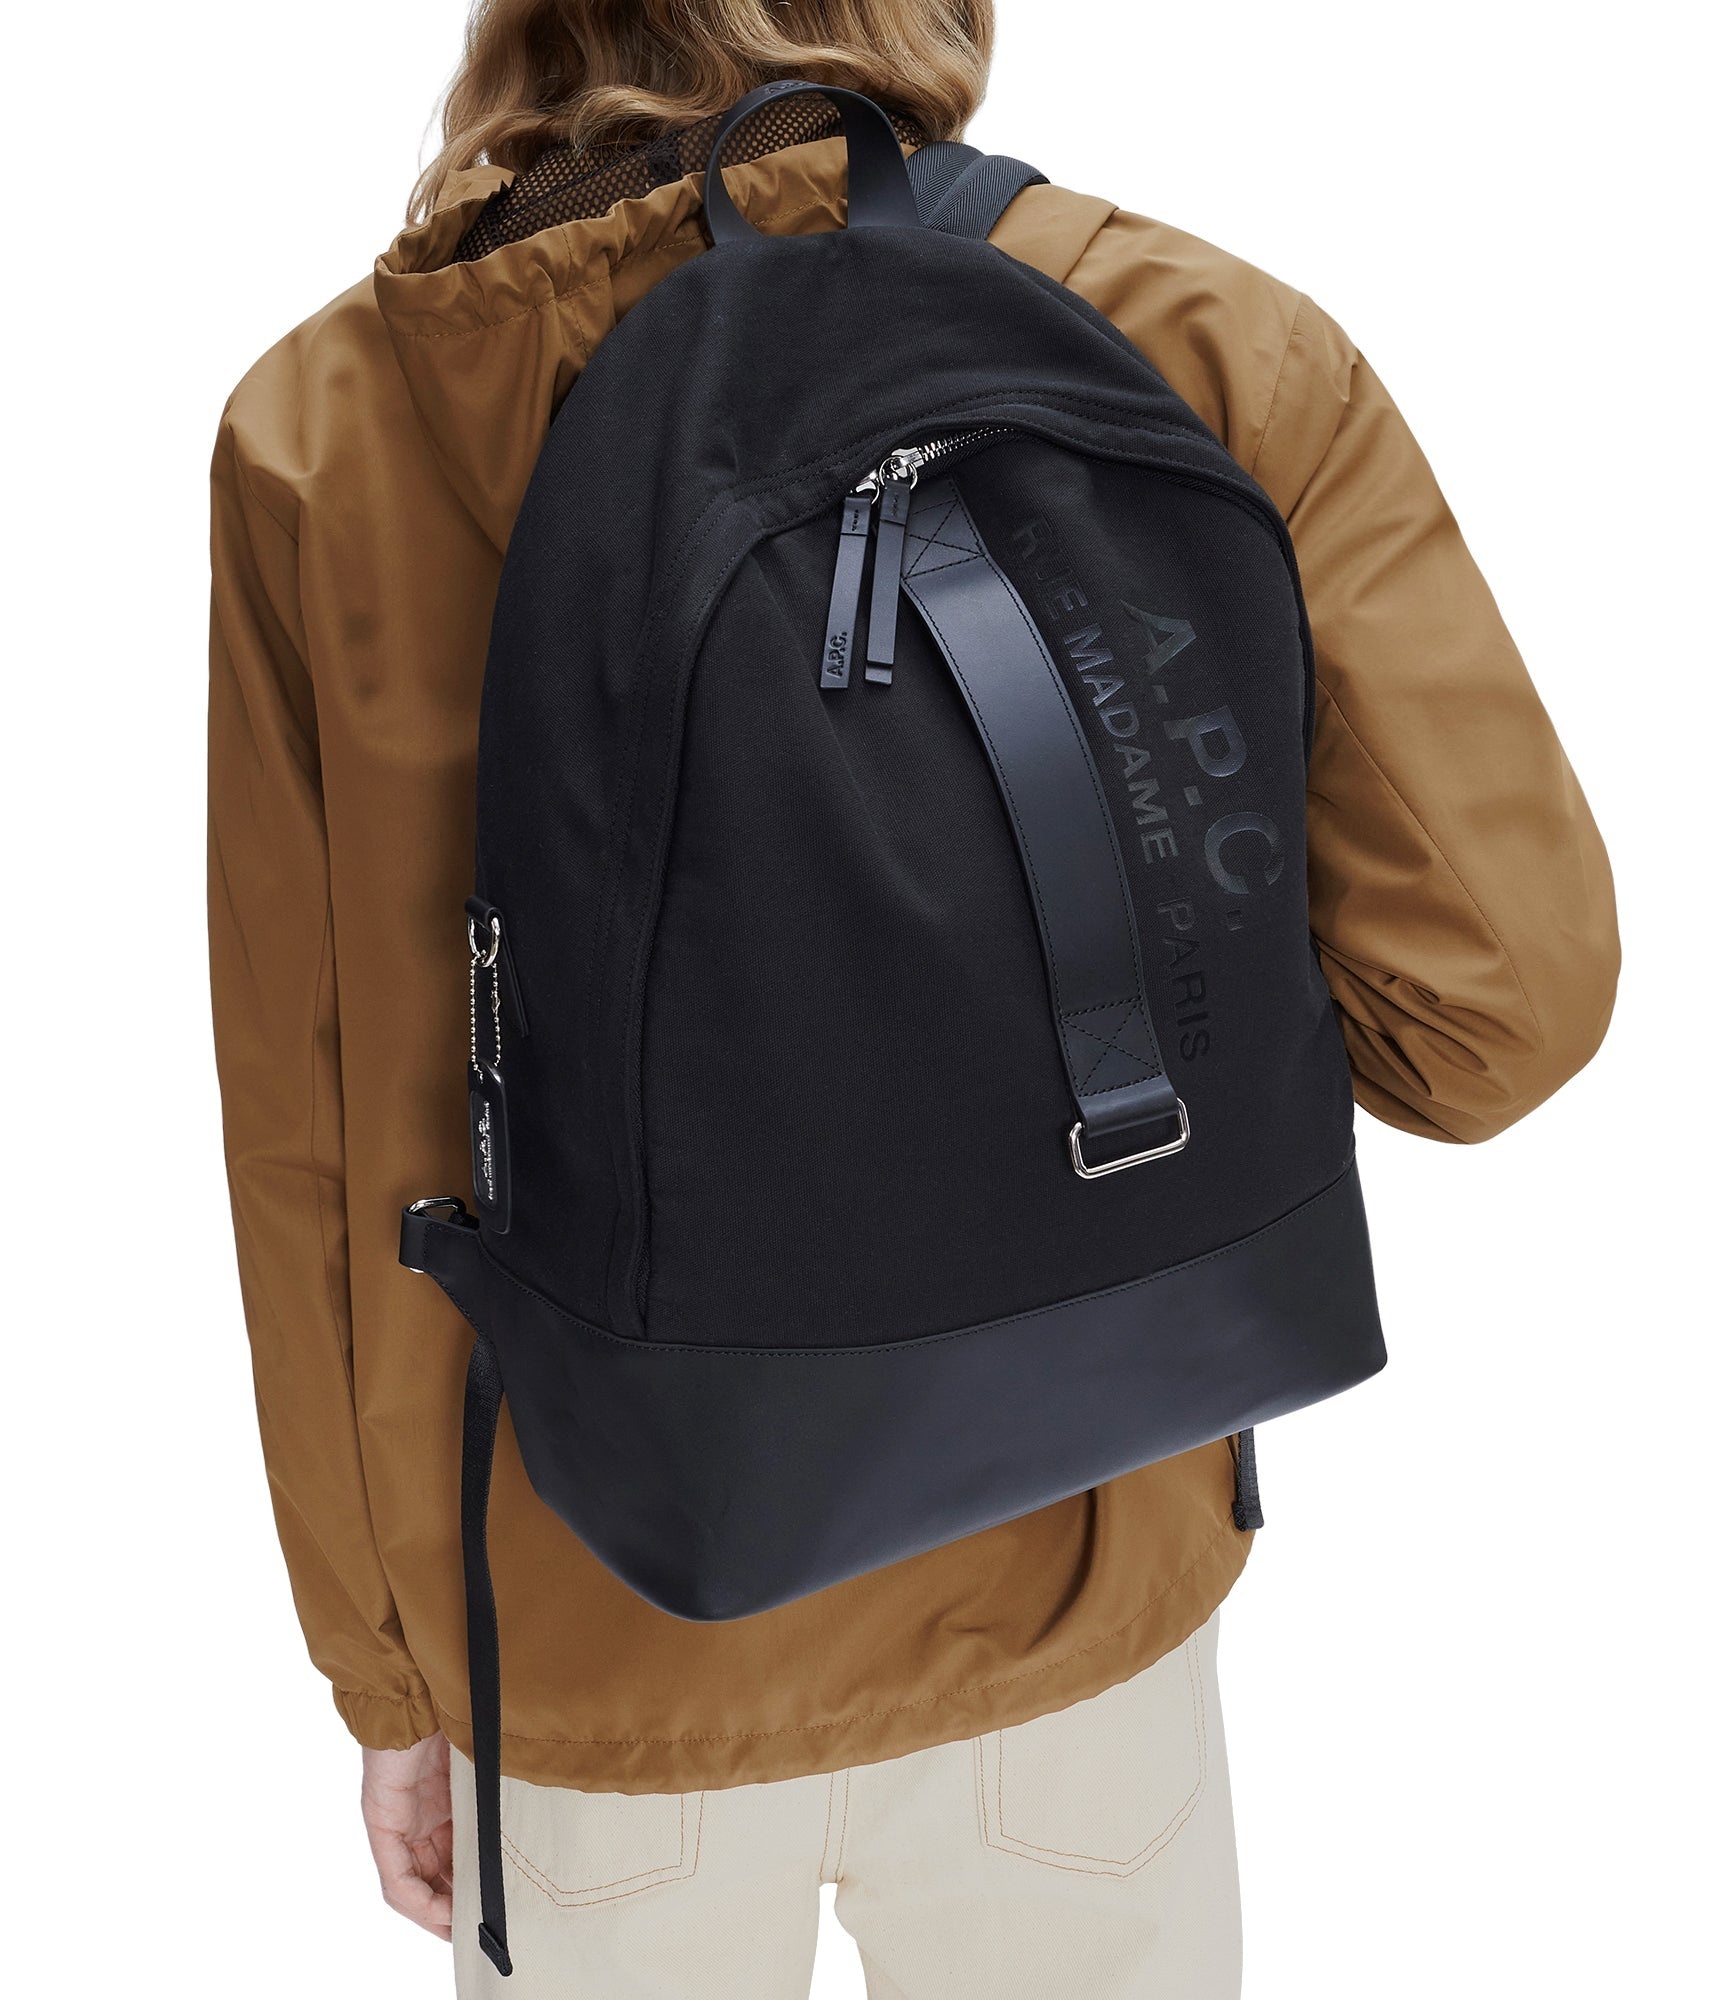 Sense backpack - 2